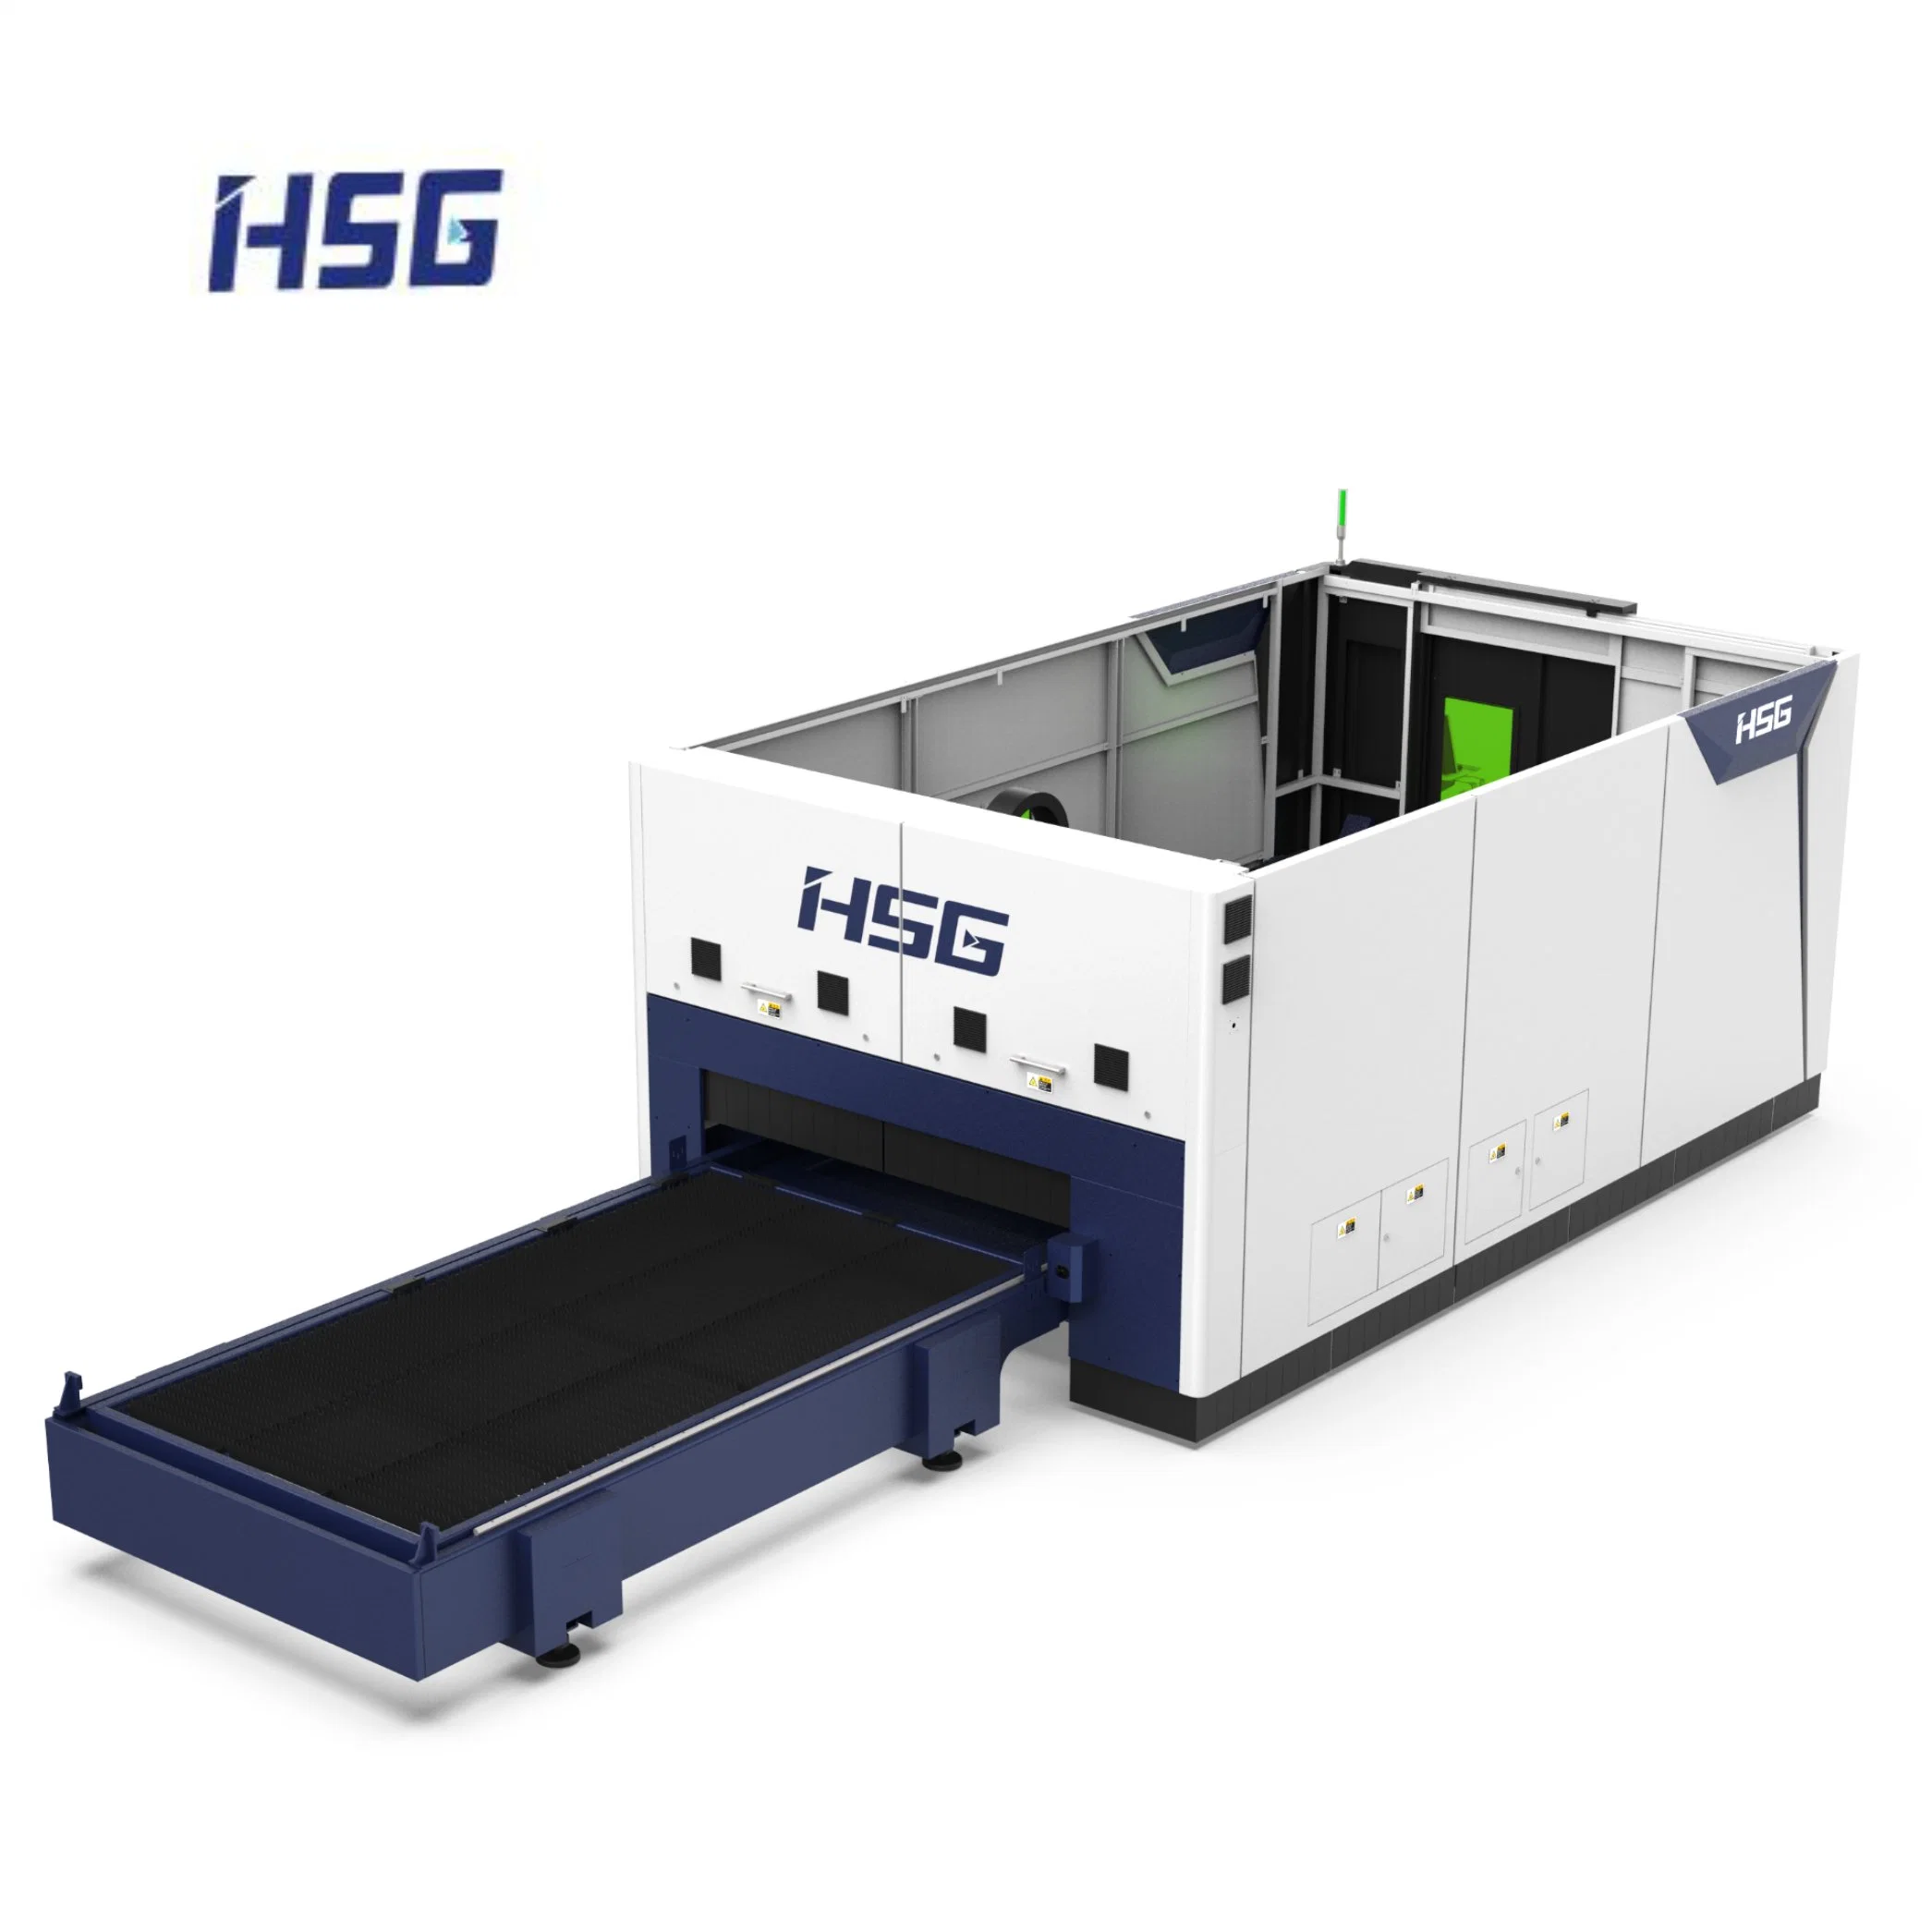 China Fabricante de metal láser de lámina metálica Hsg máquinas de corte láser con el doble de las plataformas de intercambio con 1500-6600Raycus W Fuente de alimentación